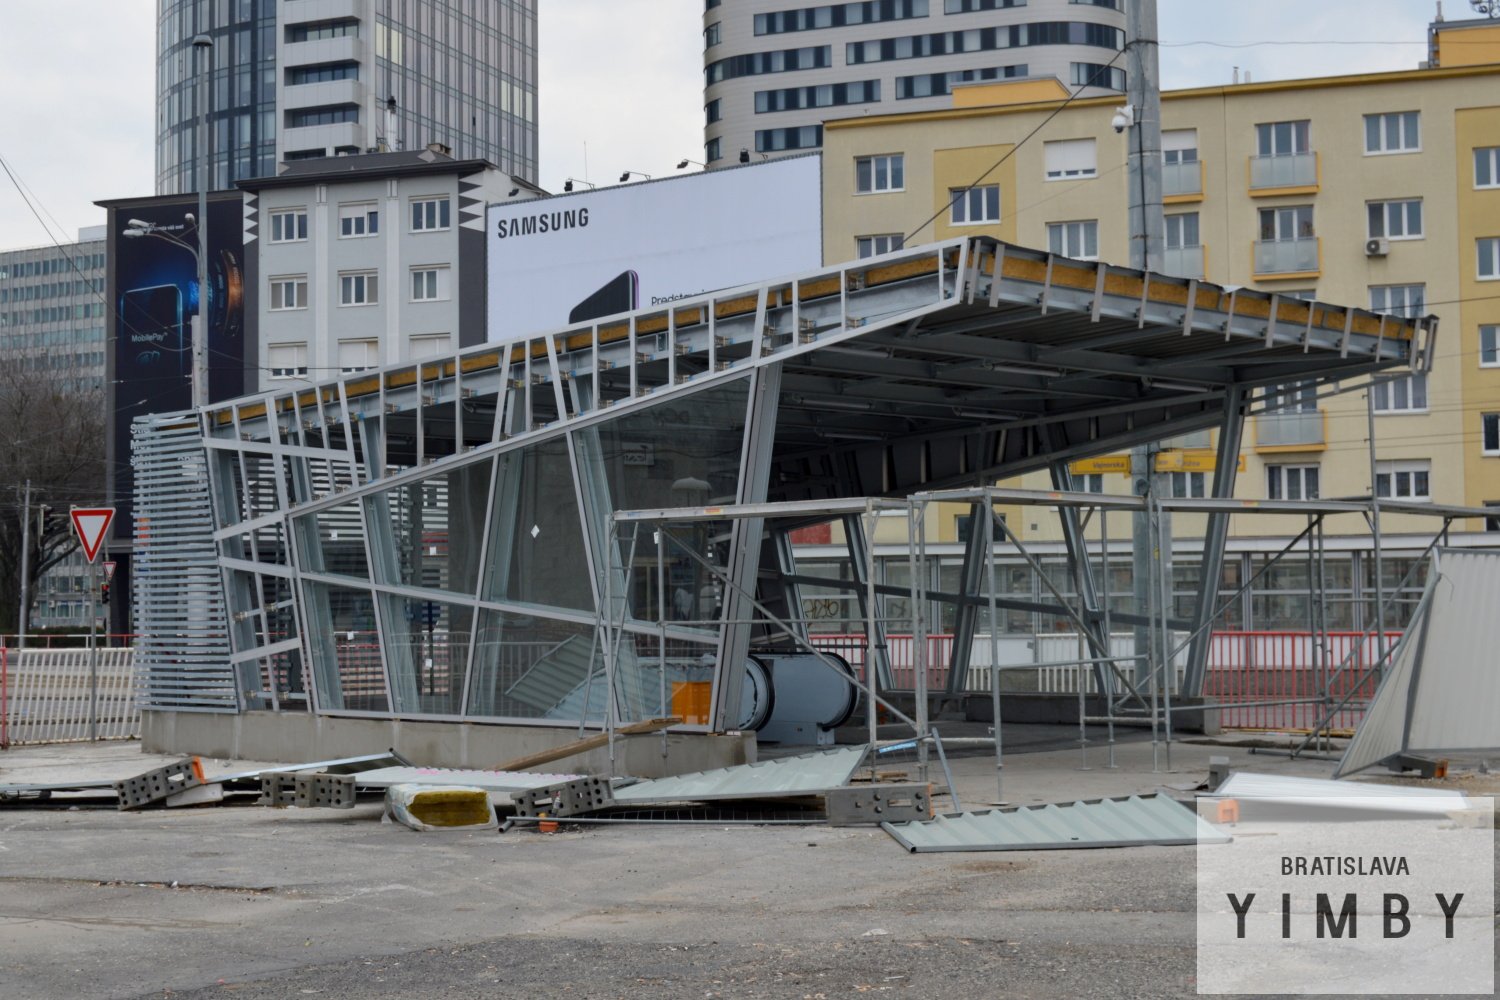 Construction update: Podchod Trnavské Mýto, 01.04.2018